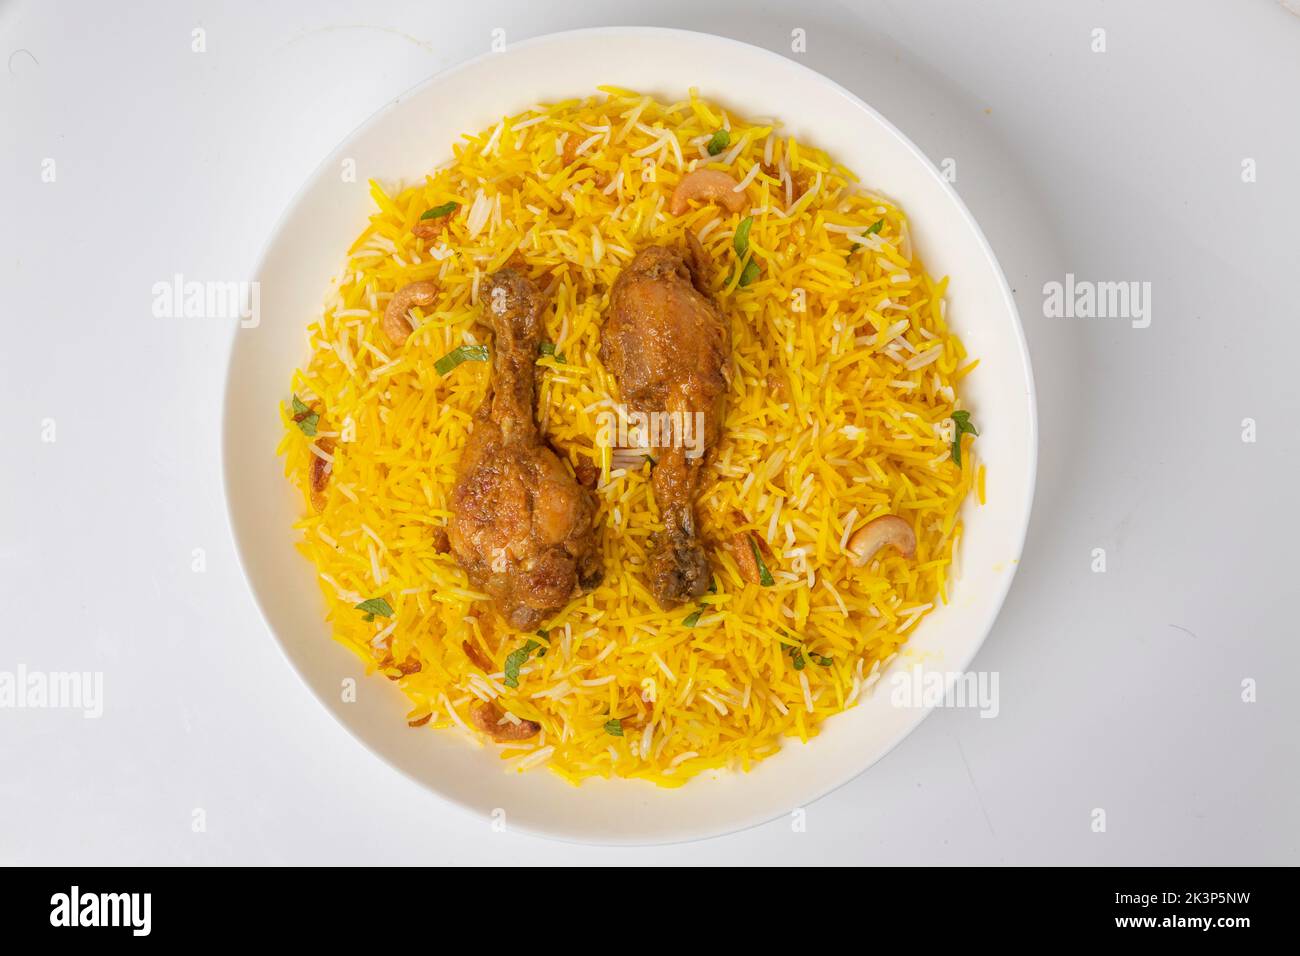 Pollo , biryani di montone , dhum biriyani di pollo in stile bangladese prodotto con riso jeera e spezie sistemato in un vasellame di ceramica bianca con bianco Foto Stock